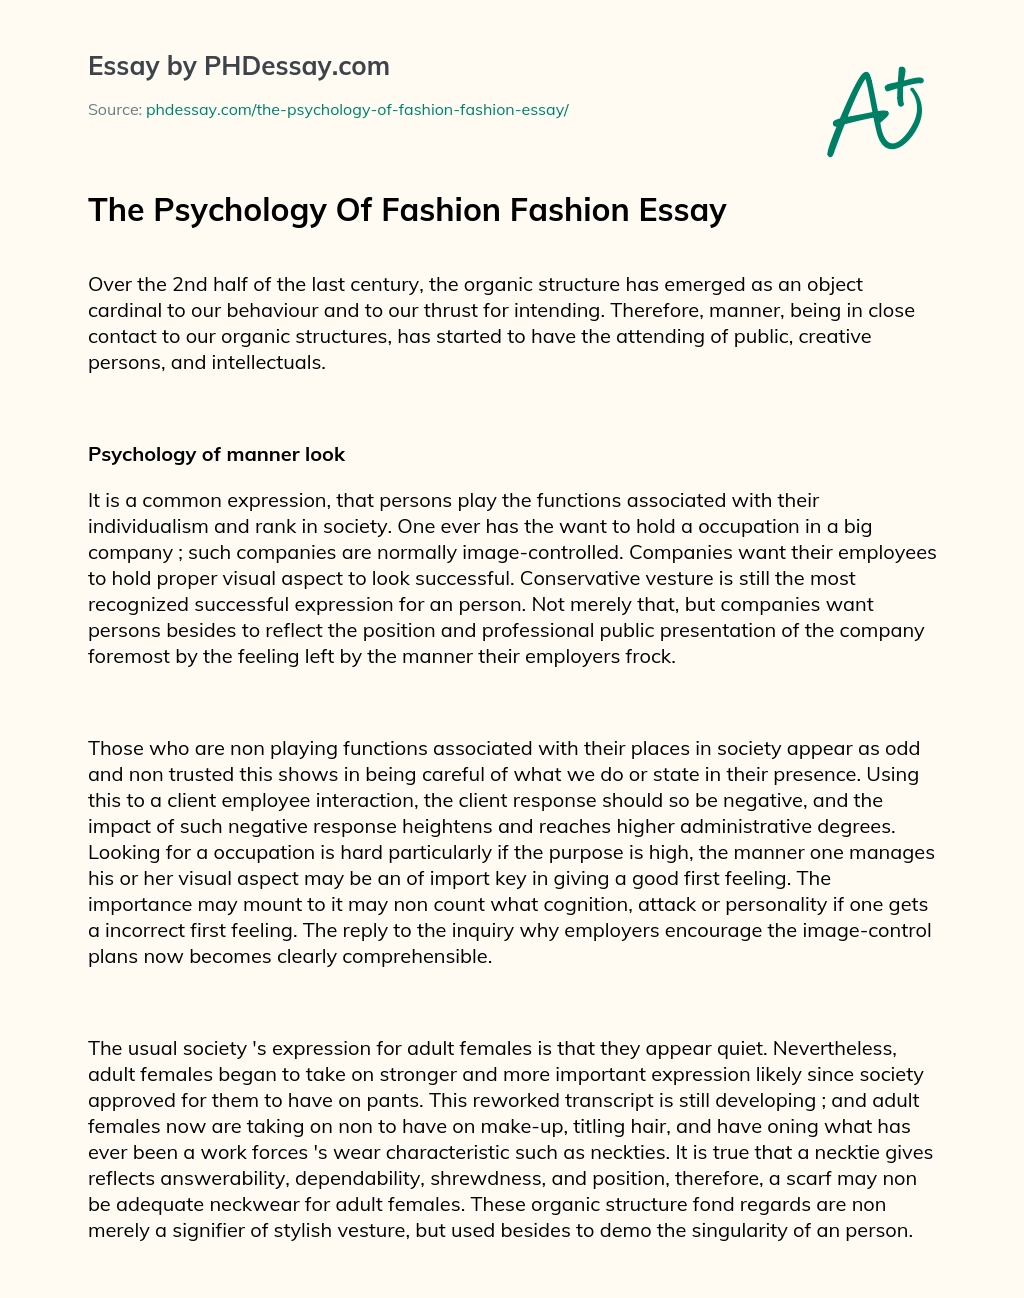 The Psychology Of Fashion Fashion Essay essay